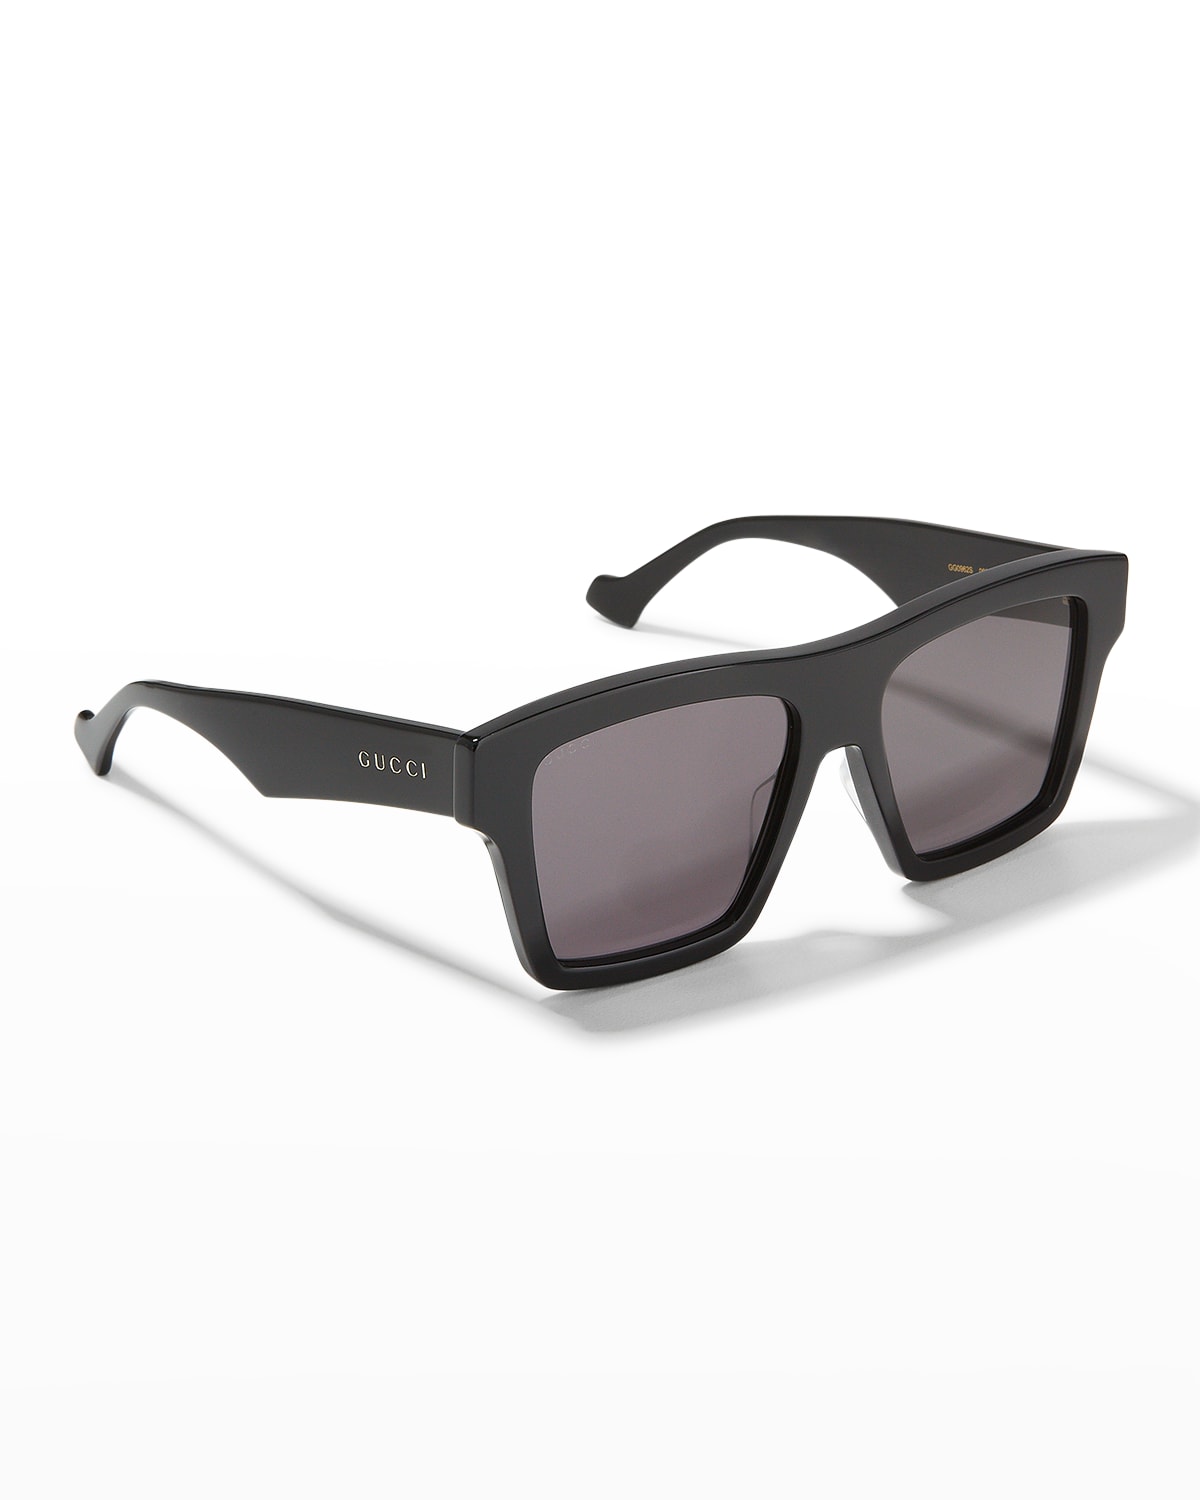 Men's Square Acetate Sunglasses